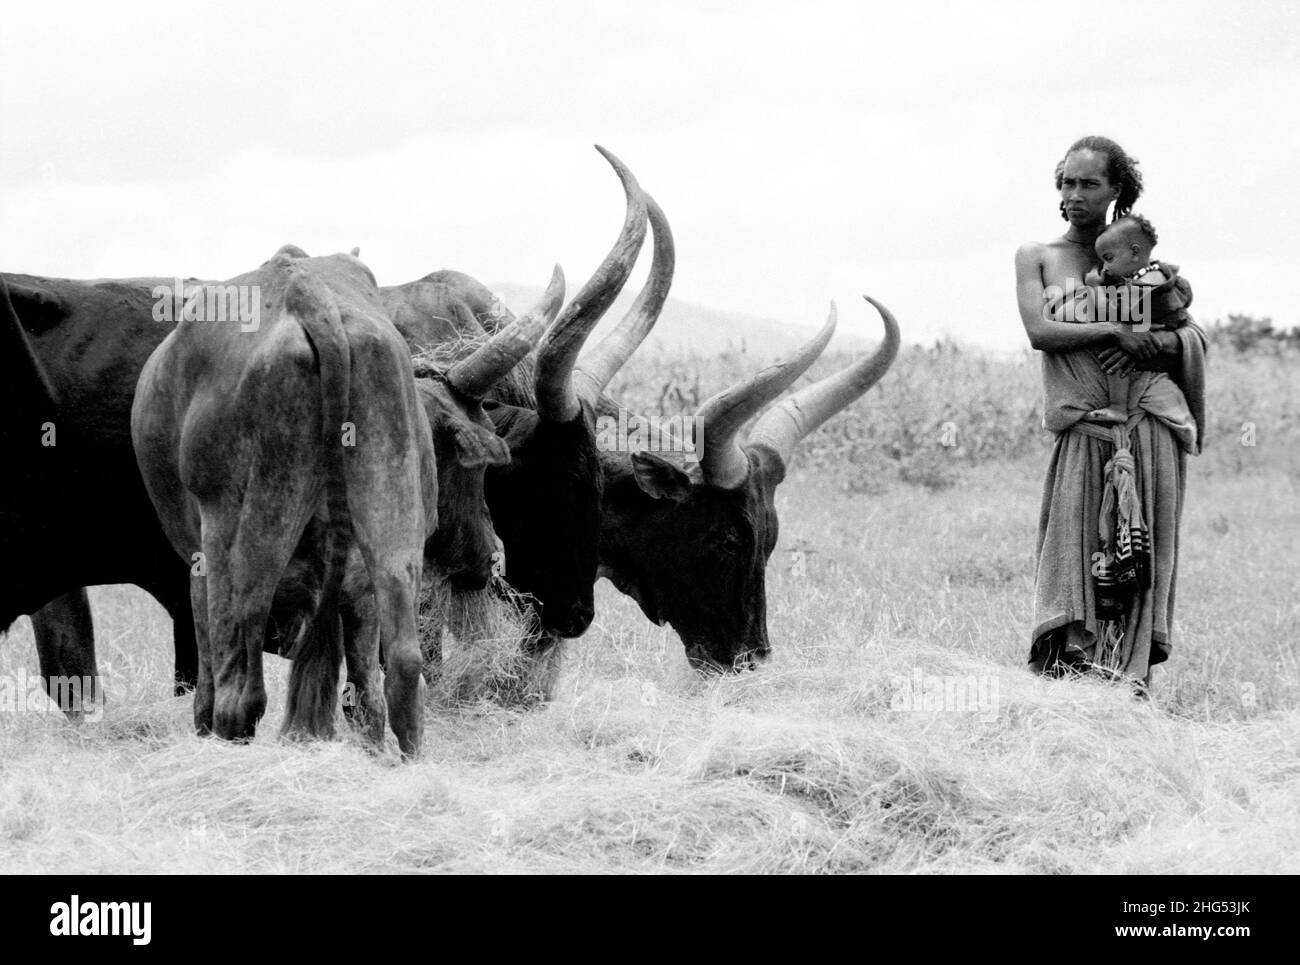 S/W einer traditionellen, ländlichen Tigrayan-Frau, die ihr Baby trägt und neben Raya steht, einem langhörnigen Vieh. Tigray, Äthiopien, Afrika Stockfoto